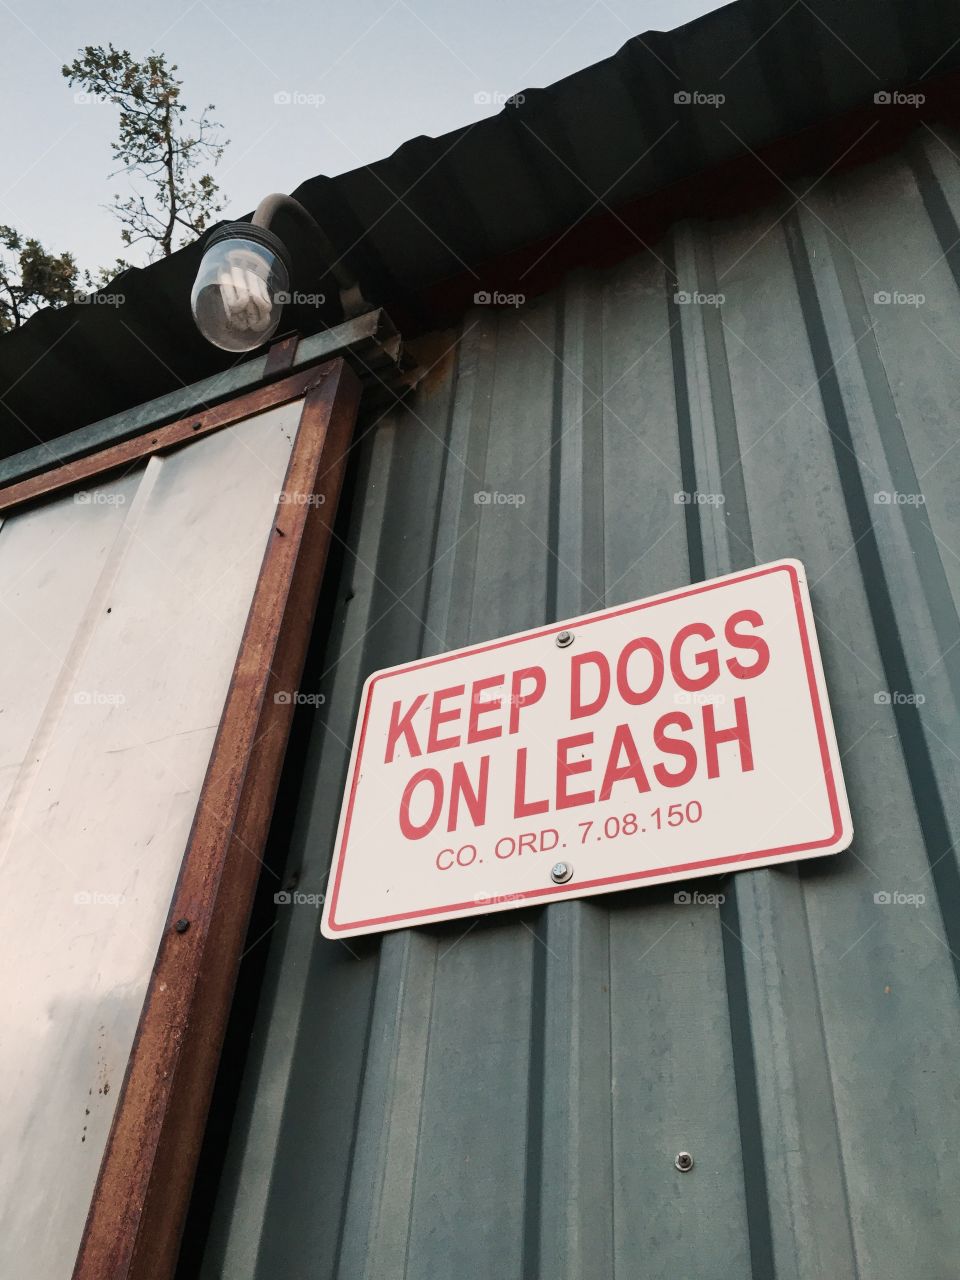 Keep Dogs on Leash